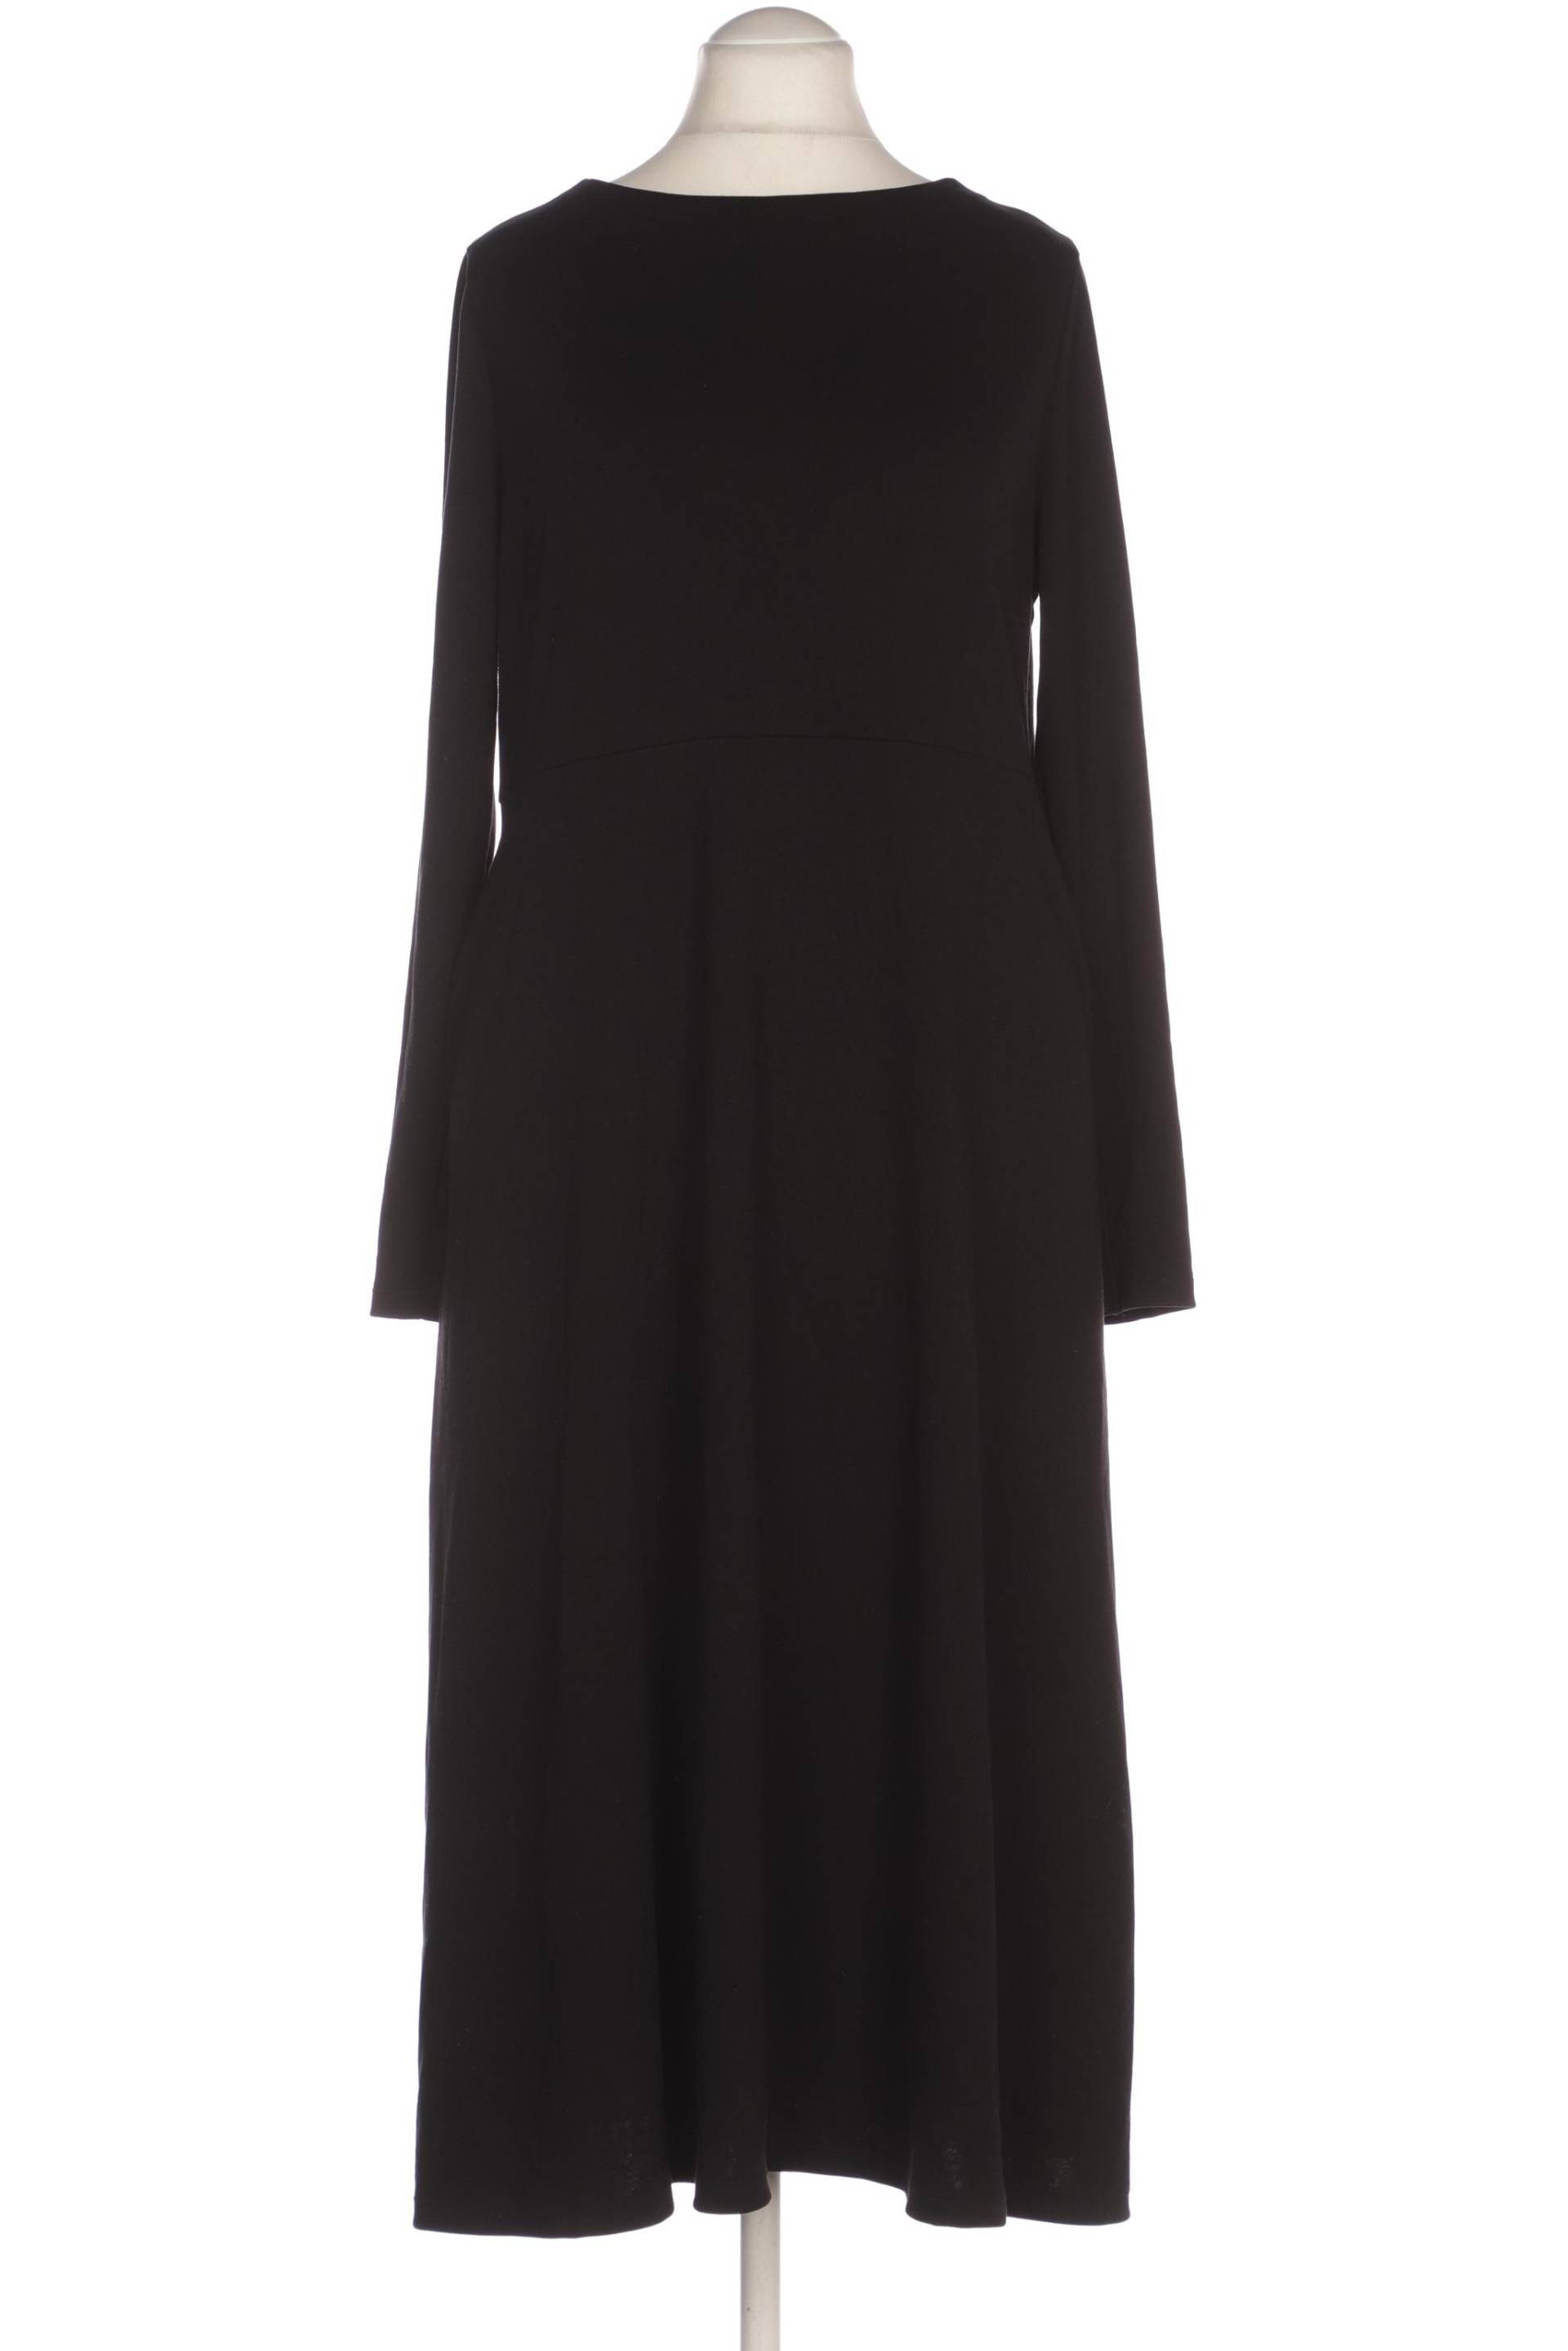 uniqlo Damen Kleid, schwarz, Gr. 42 von uniqlo